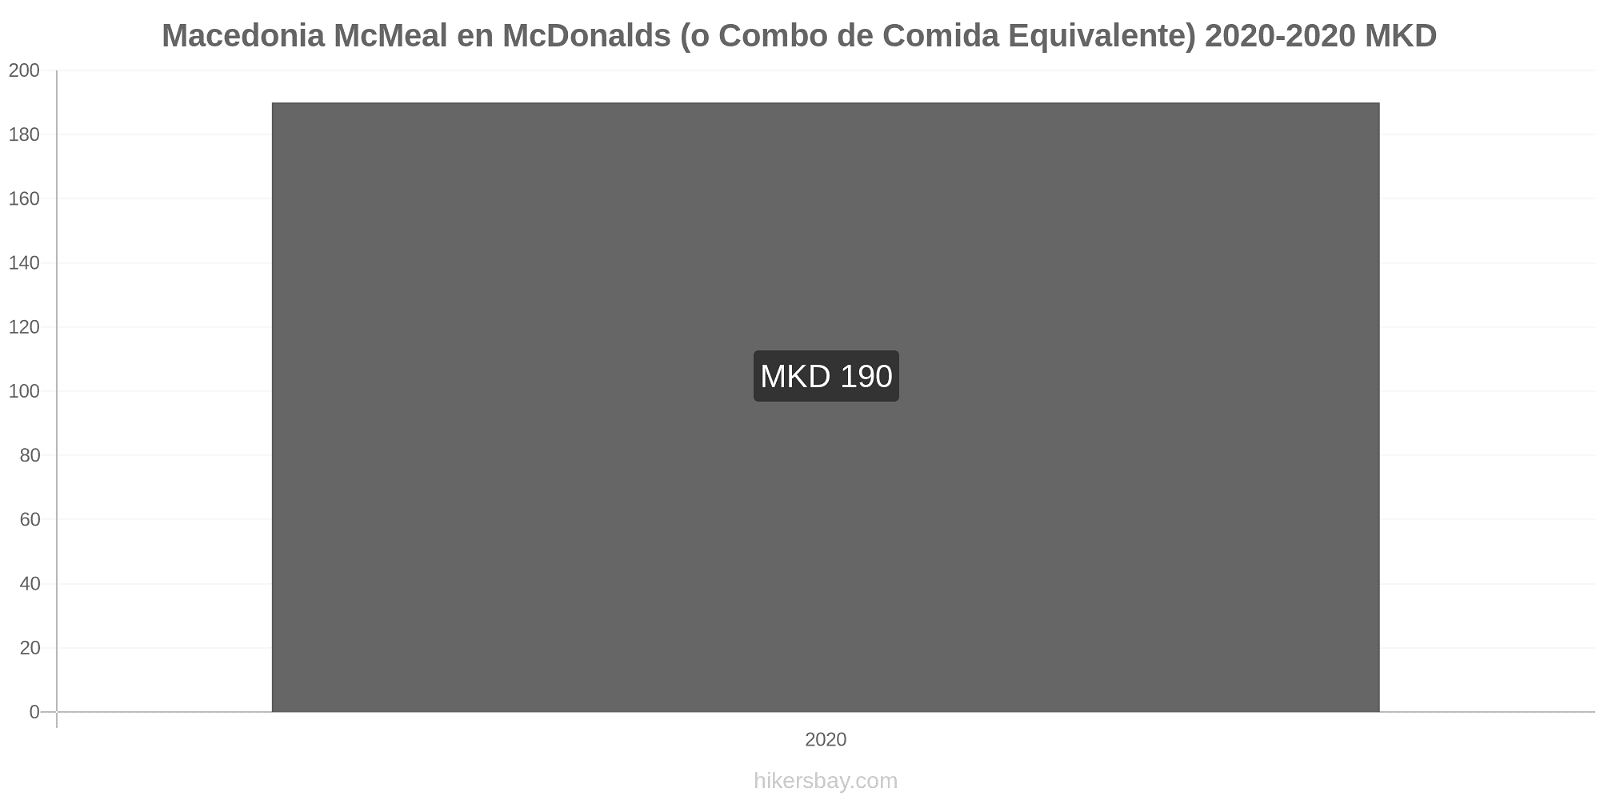 Macedonia cambios de precios McMeal en McDonalds (o menú equivalente) hikersbay.com